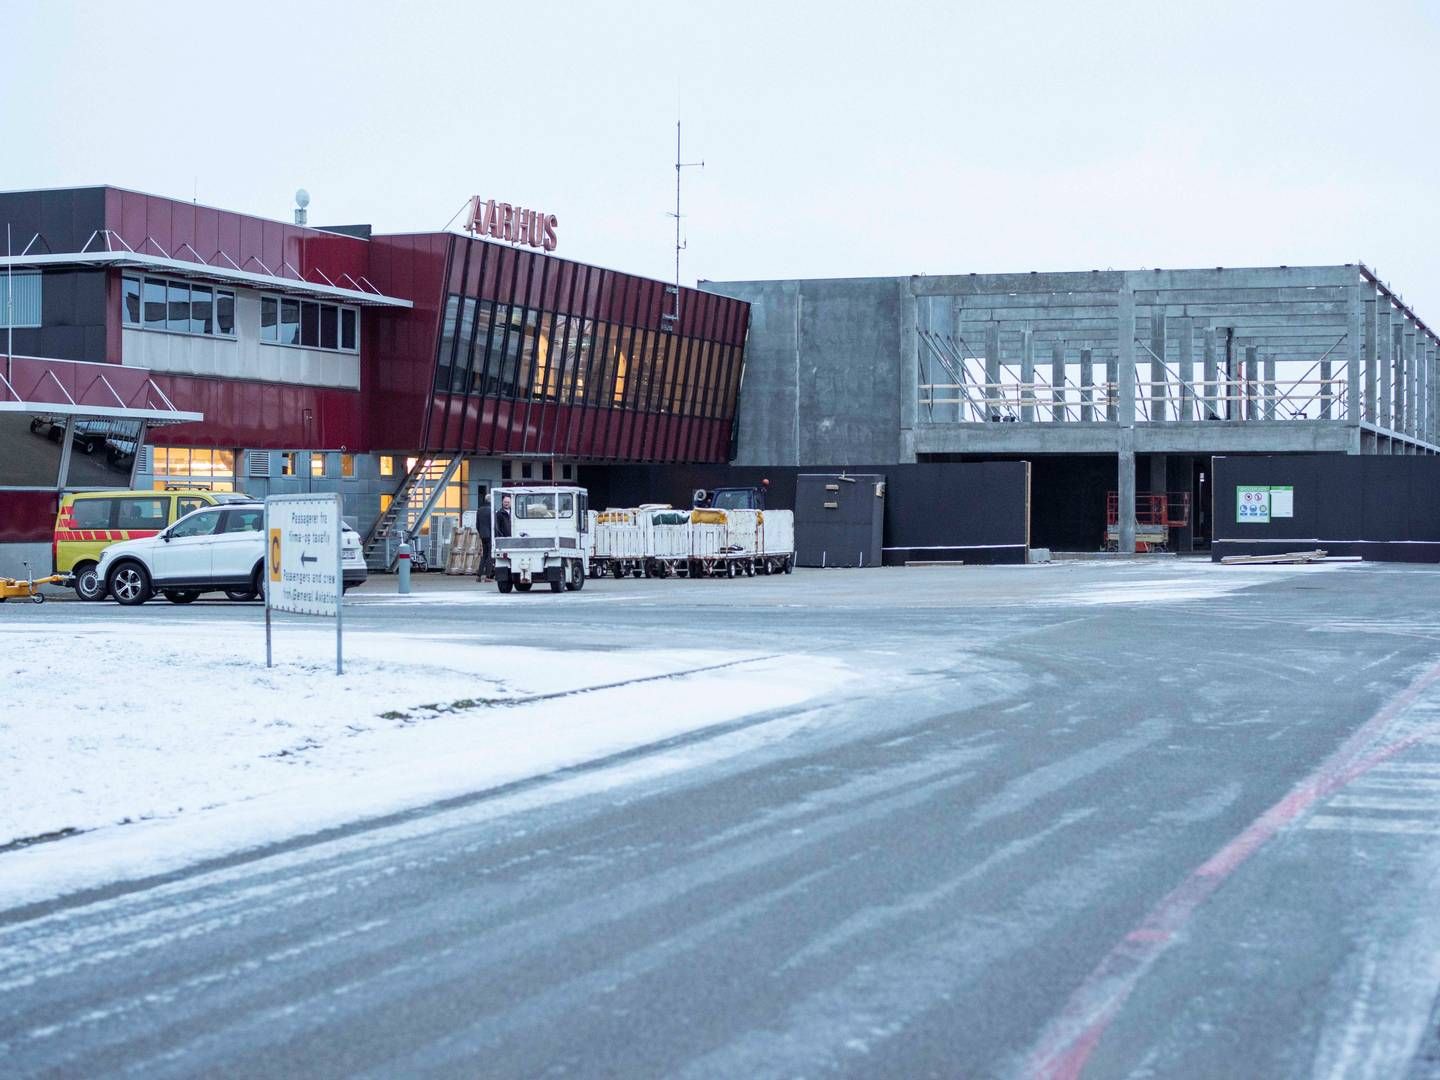 Til maj er det to år siden, at lufthavnen fik tilført frisk kapital. | Foto: Søren Vendelbo/Ritzau Scanpix